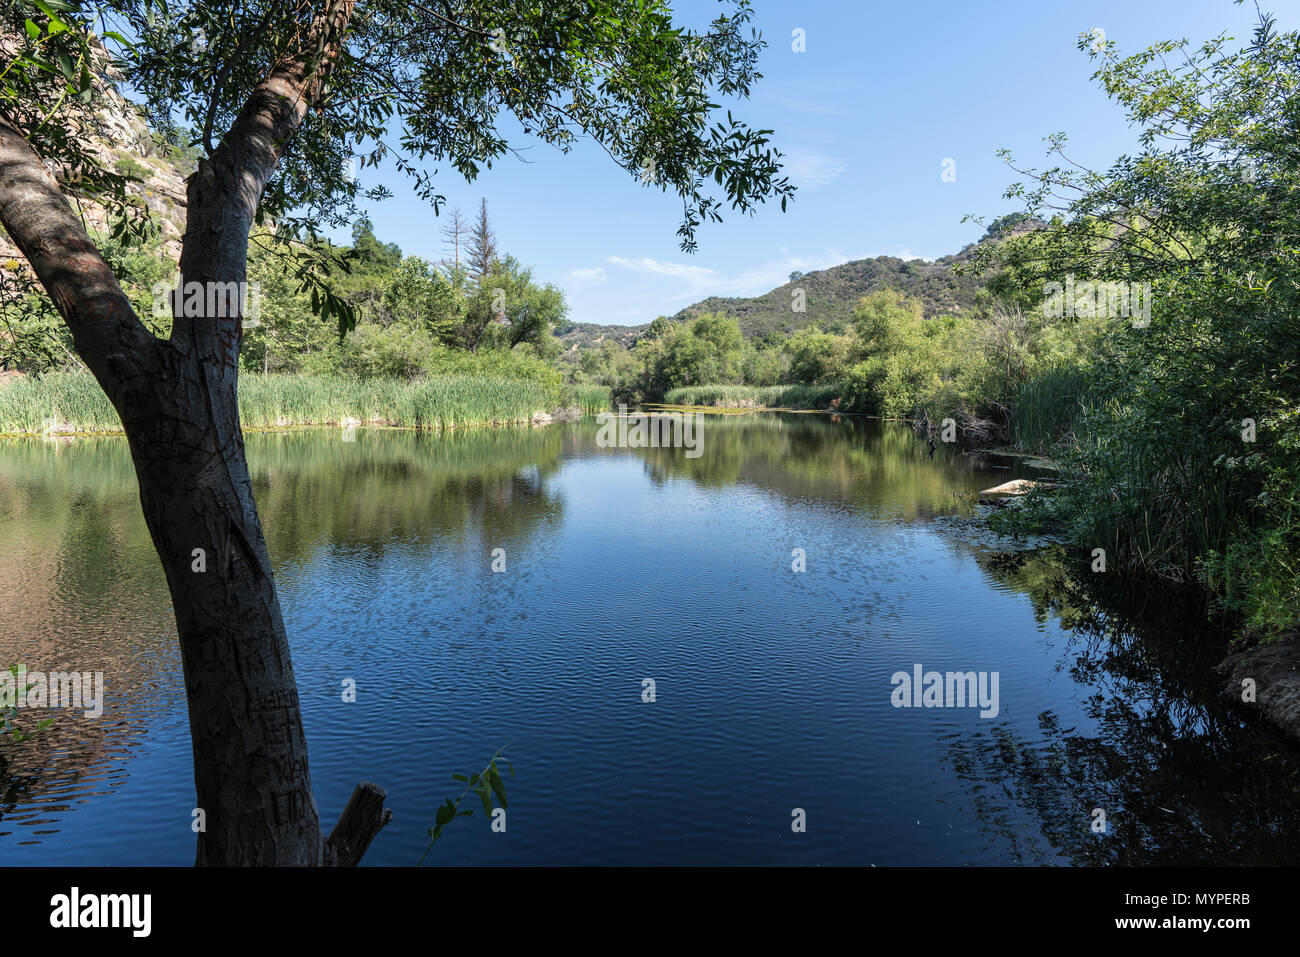 Siècle Lake à Malibu Creek State Park dans le montagnes de Santa Monica, près de Los Angeles, Californie. Banque D'Images